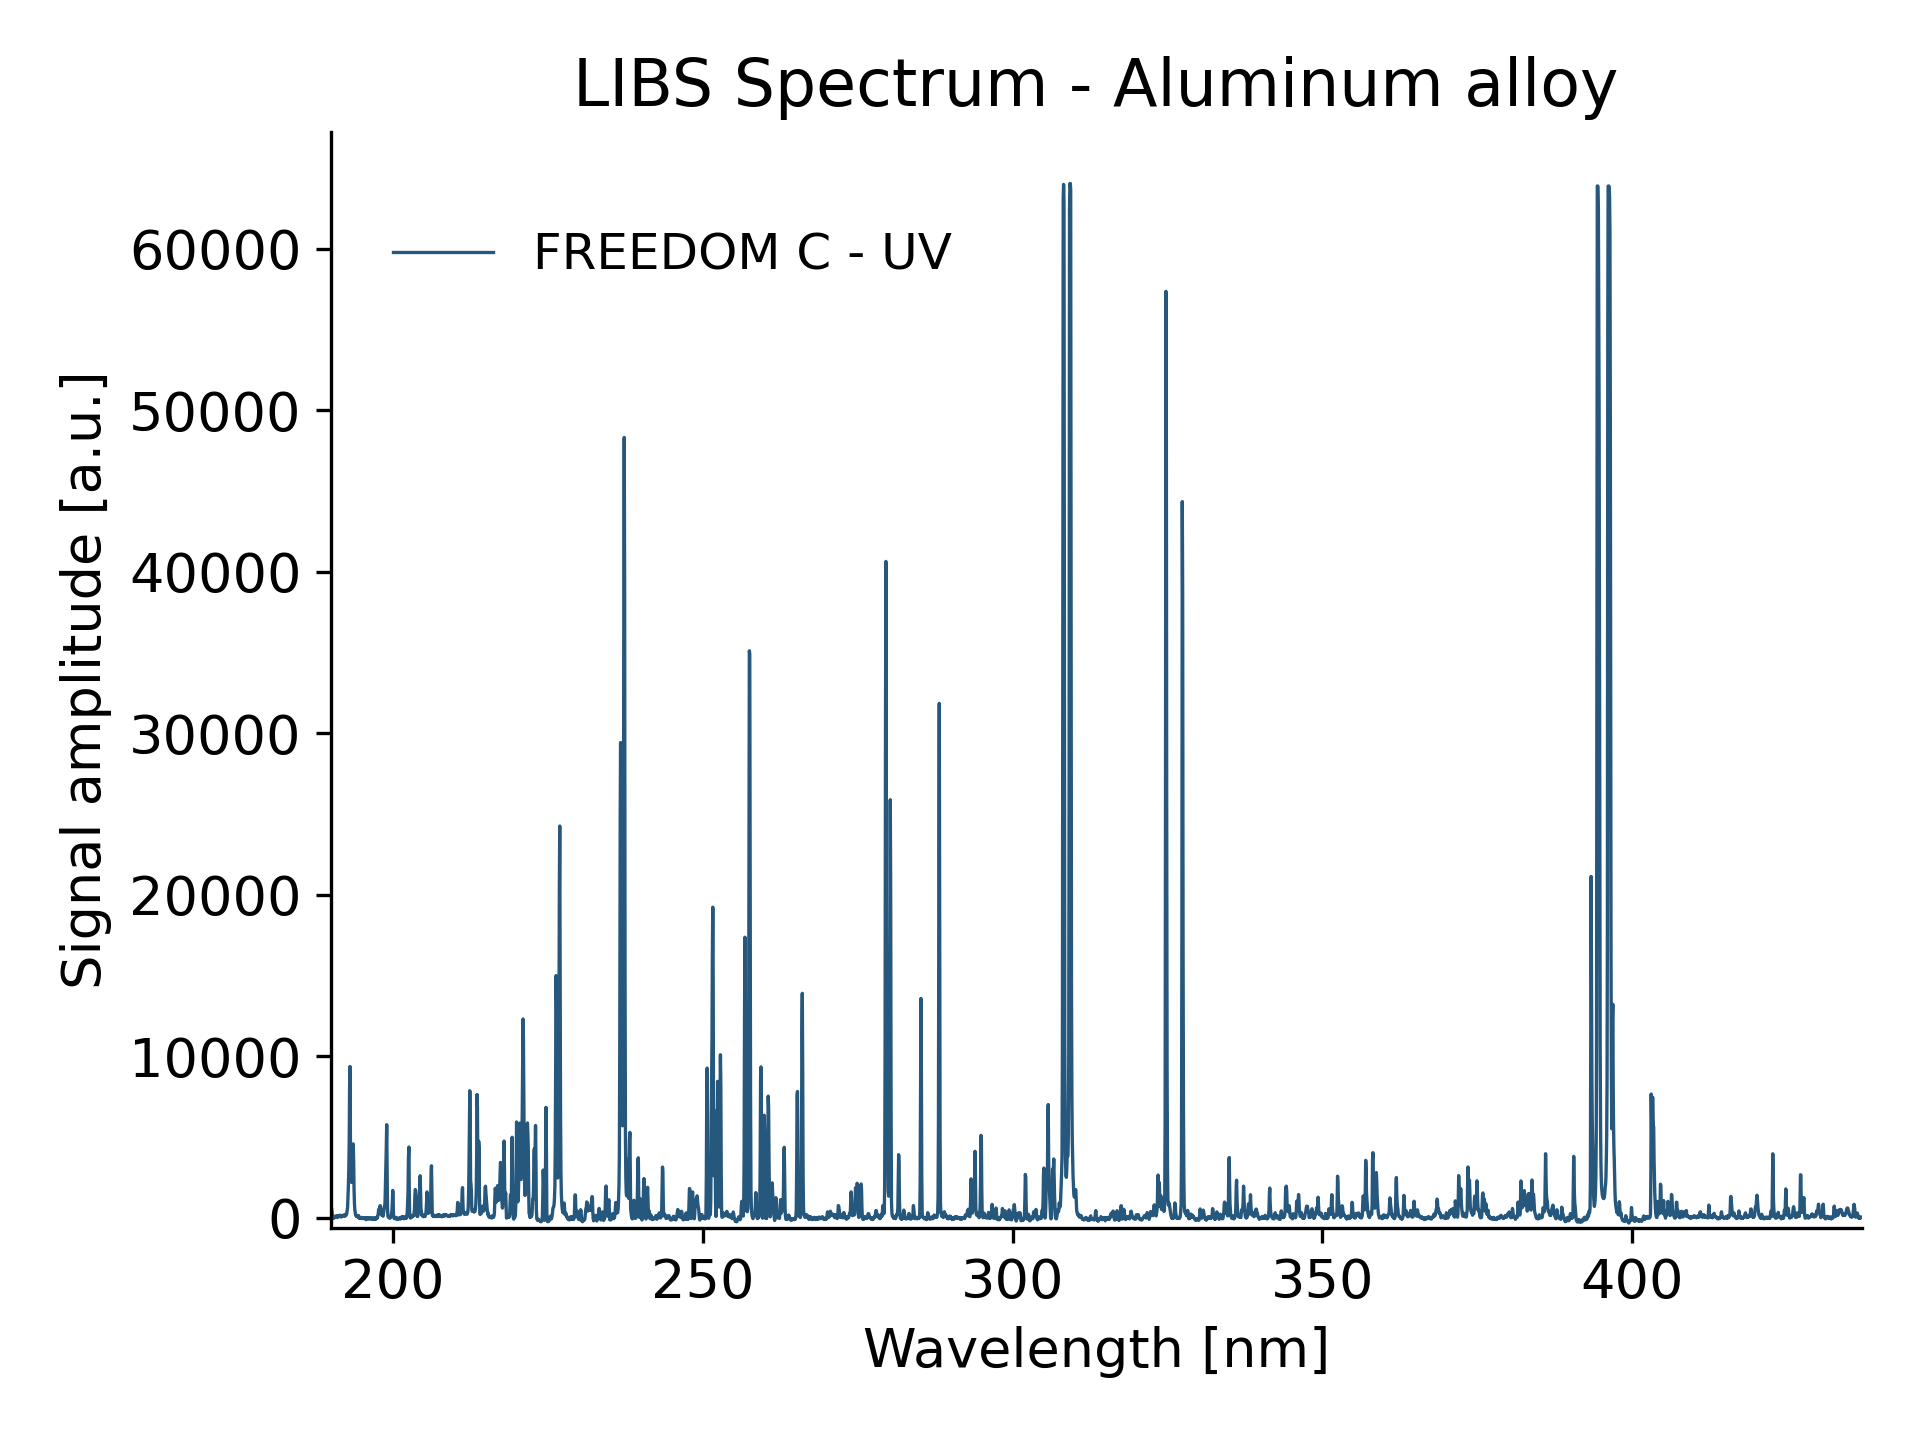 LIBS spectrum - Aluminum alloy